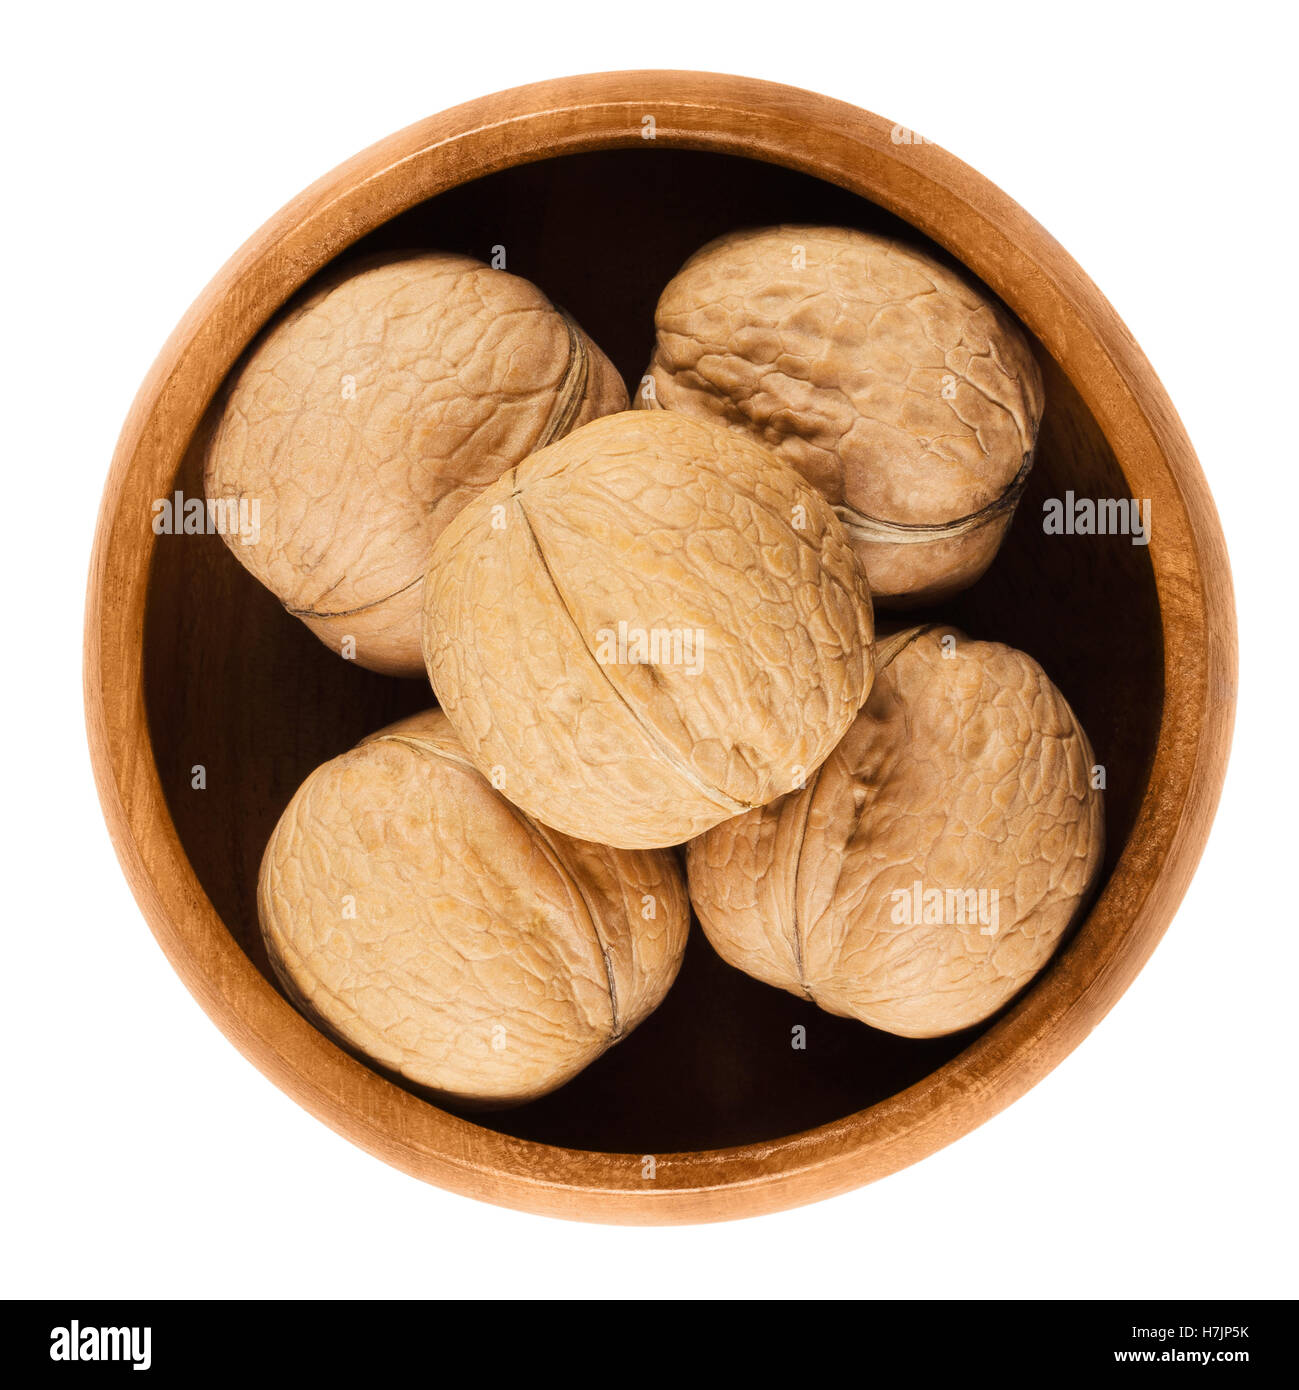 Tutta le noci comuni con guscio in una ciotola di legno su sfondo bianco. Brown di frutta secca di noci comuni, Juglans regia. Foto Stock